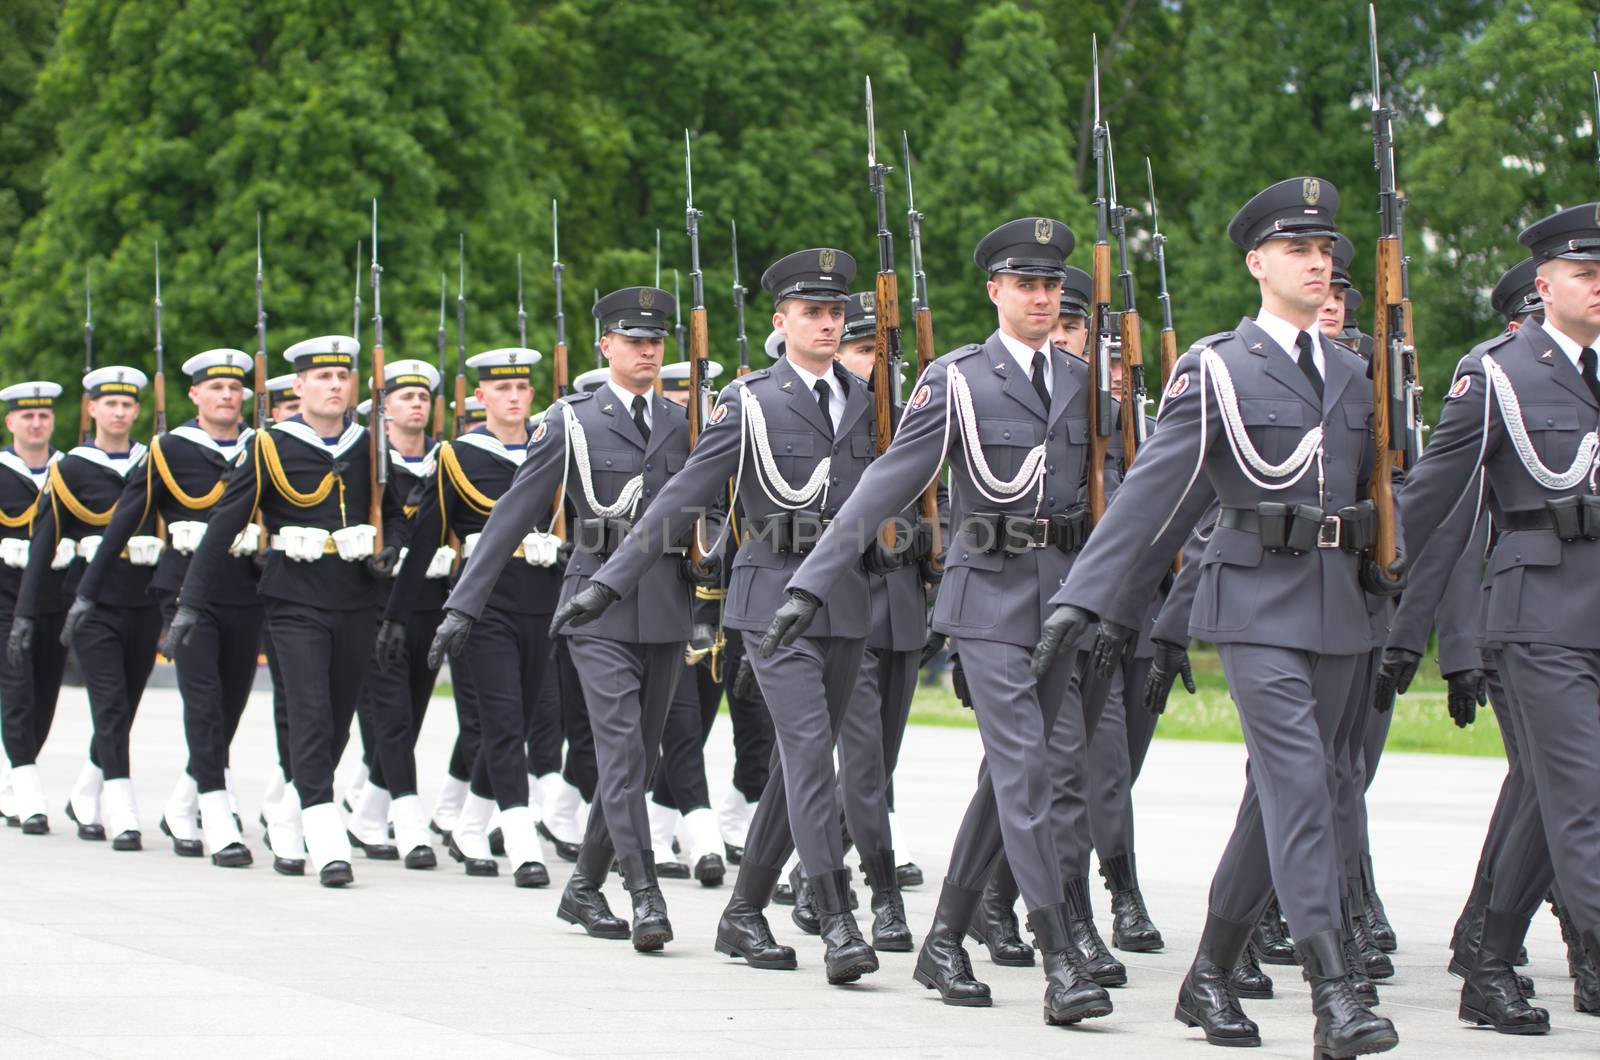 Military parade by dario